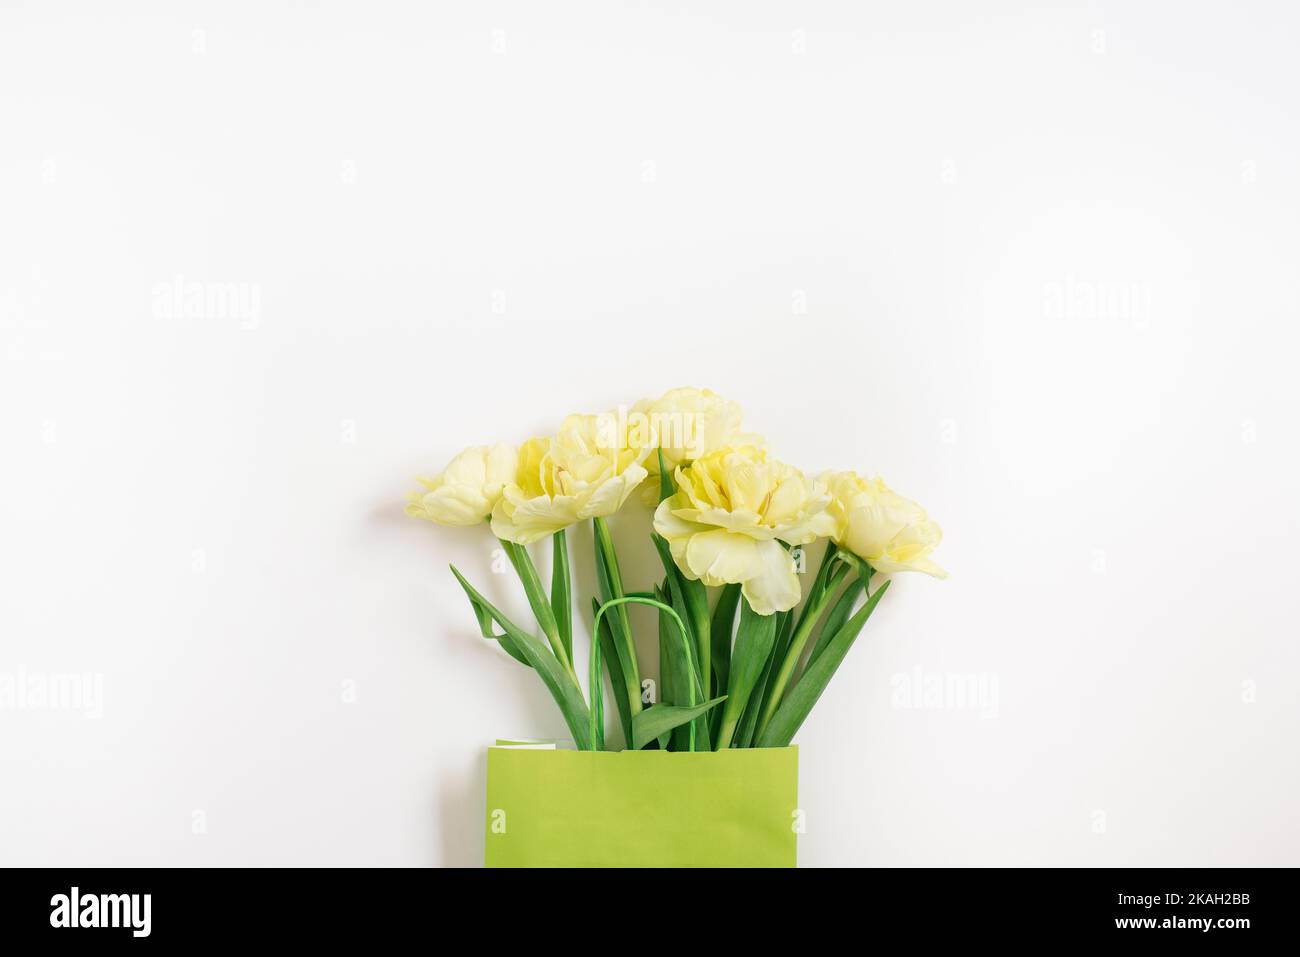 Schöne gelbe Tulpenblüten in einer grünen Papiertüte mit Platz für Text. Das Konzept der Verkäufe, Frühlingsrabatte, Einkaufen und umweltfreundlich Stockfoto